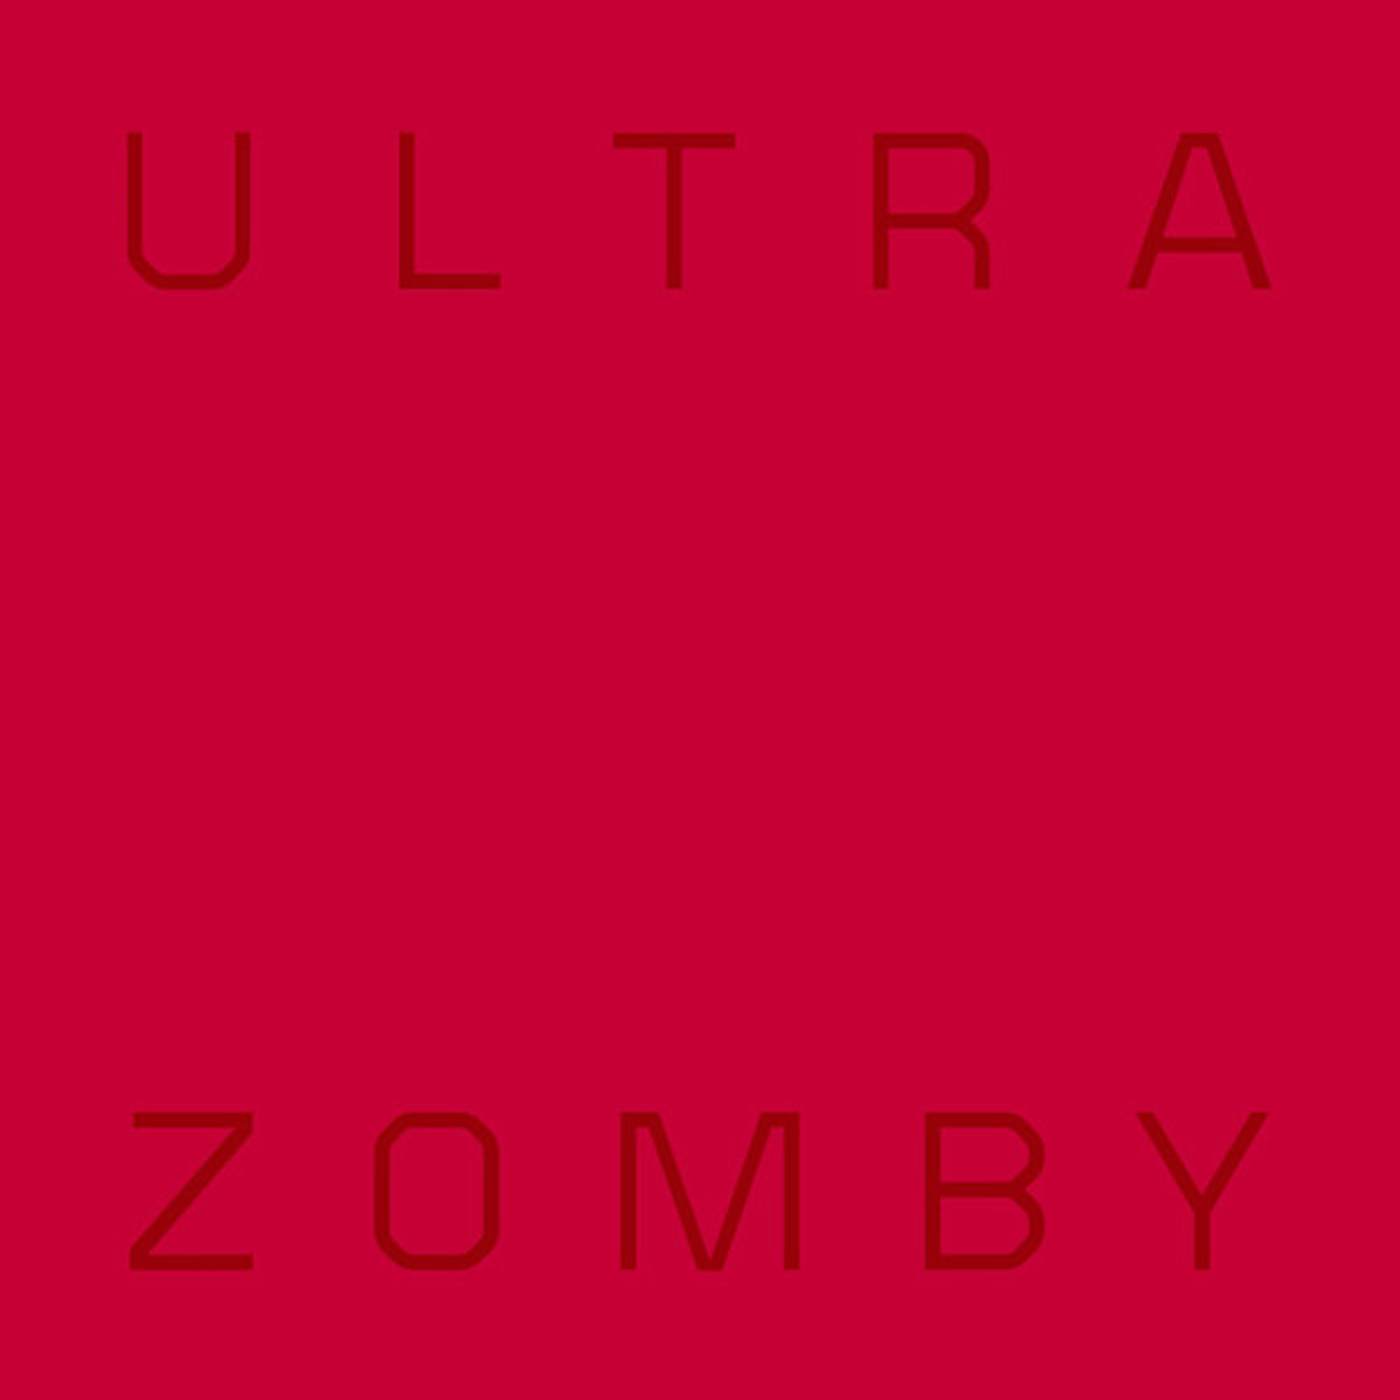 Zomby Ultra Vinyl Record